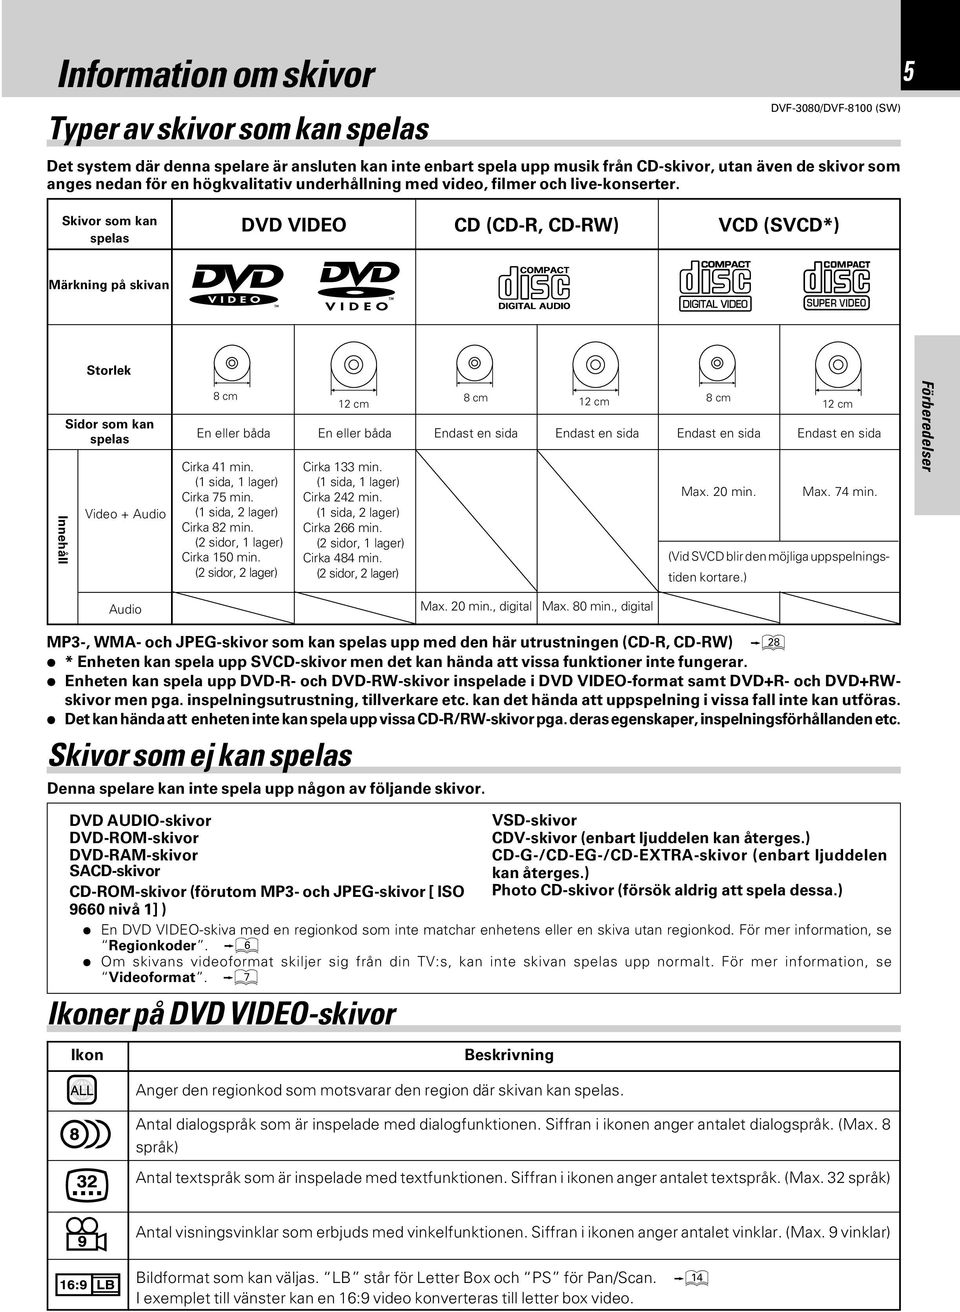 5 Skivor som kan spelas DVD VIDEO CD (CD-R, CD-RW) VCD (SVCD*) Märkning på skivan Storlek Innehåll Sidor som kan spelas Video + Audio 8 cm En eller båda Cirka 41 min. (1 sida, 1 lager) Cirka 75 min.